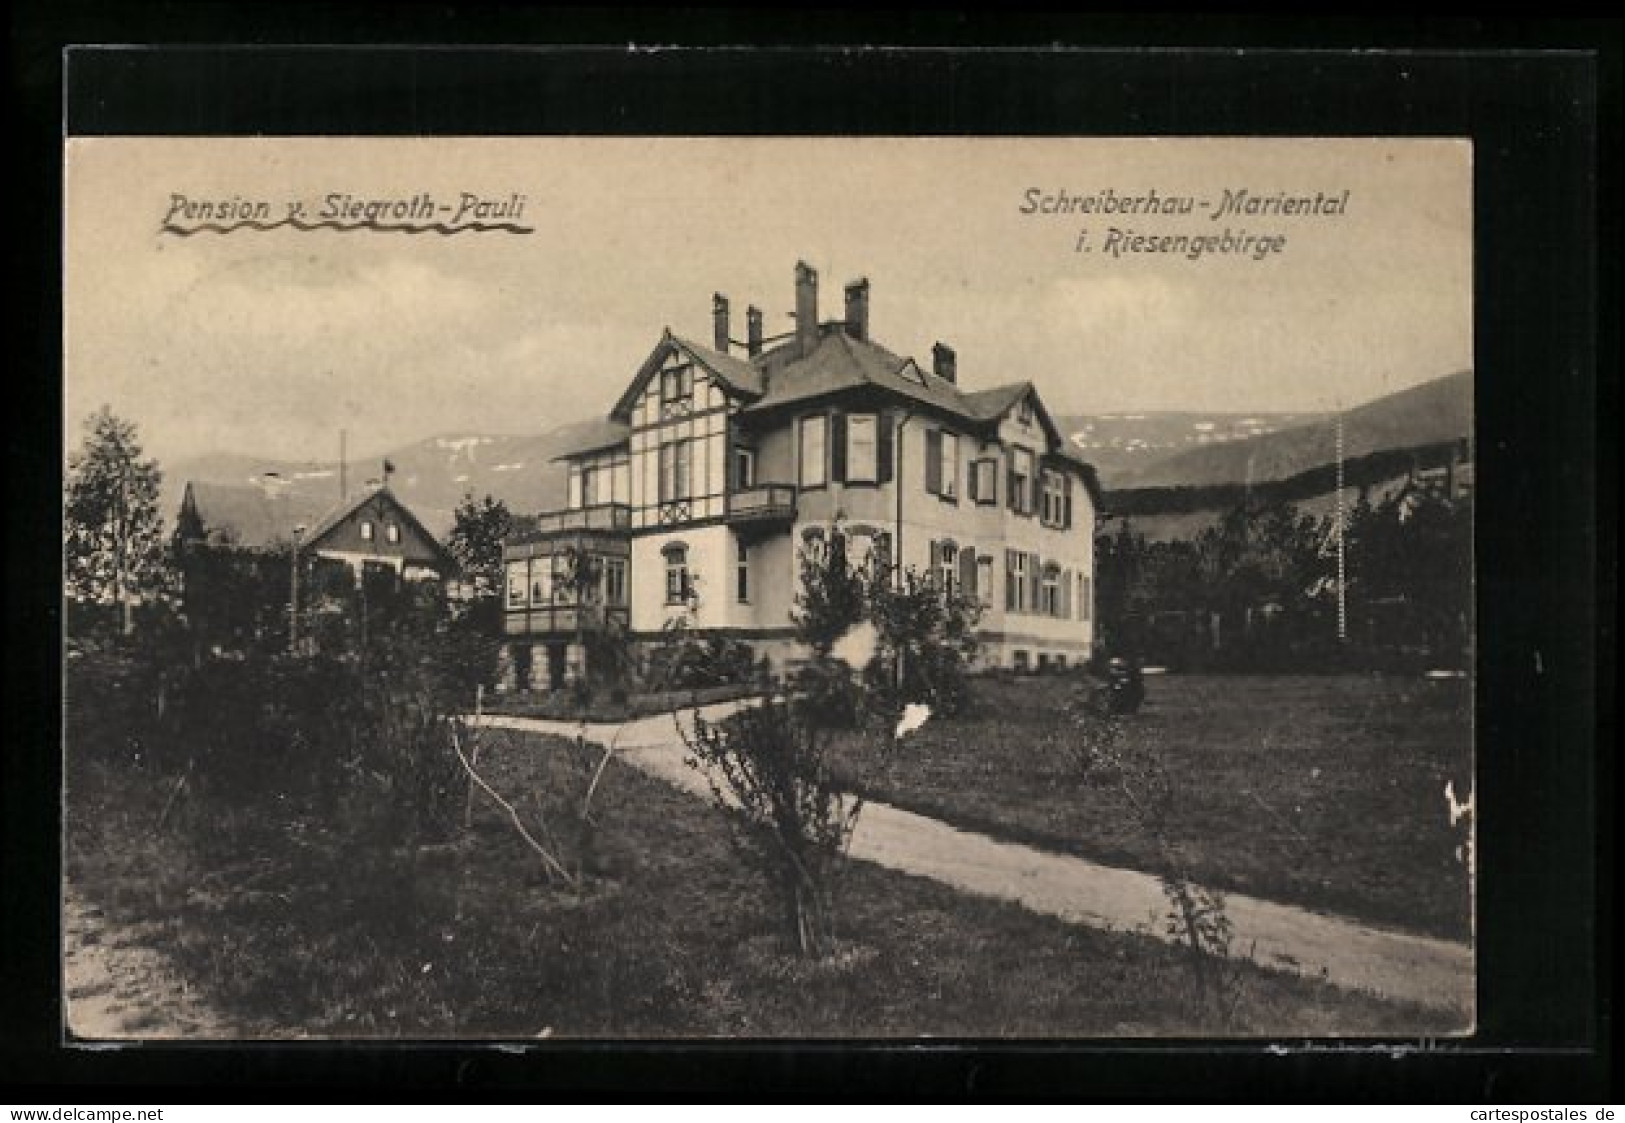 AK Schreiberhau-Mariental I. Riesengebirge, Hotel-Pension Von Siegroth-Pauli  - Schlesien